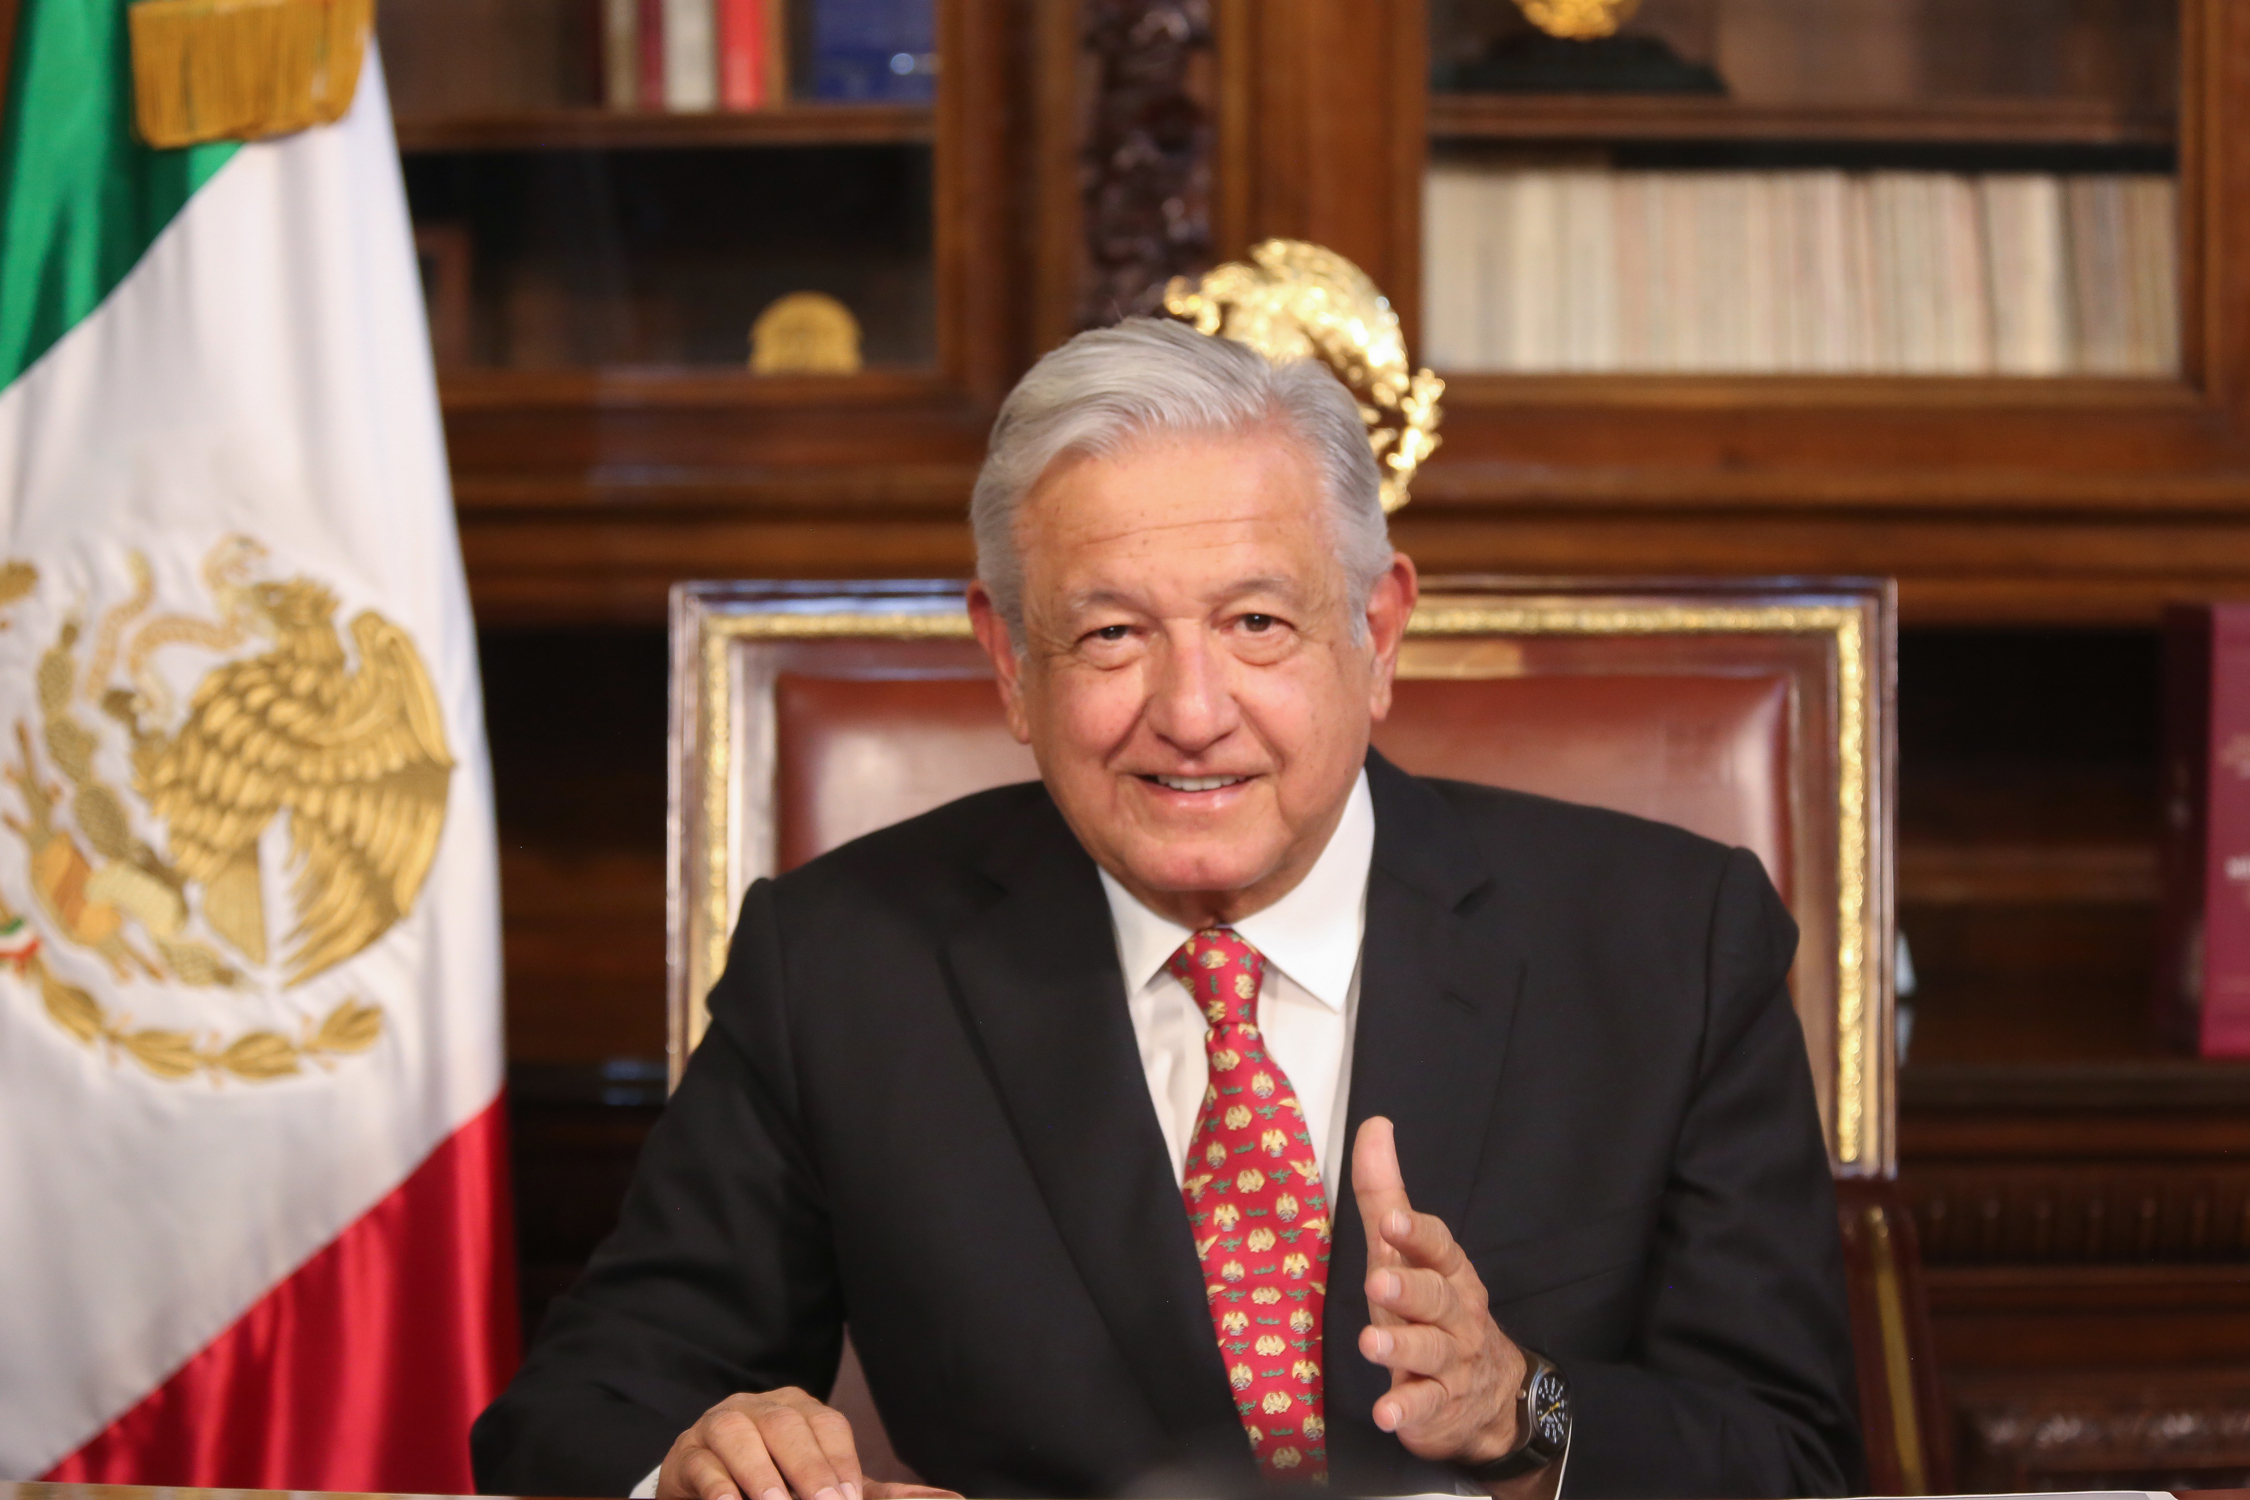 Mexican President Andrés Manuel López Obrador wins controversial recall referendum